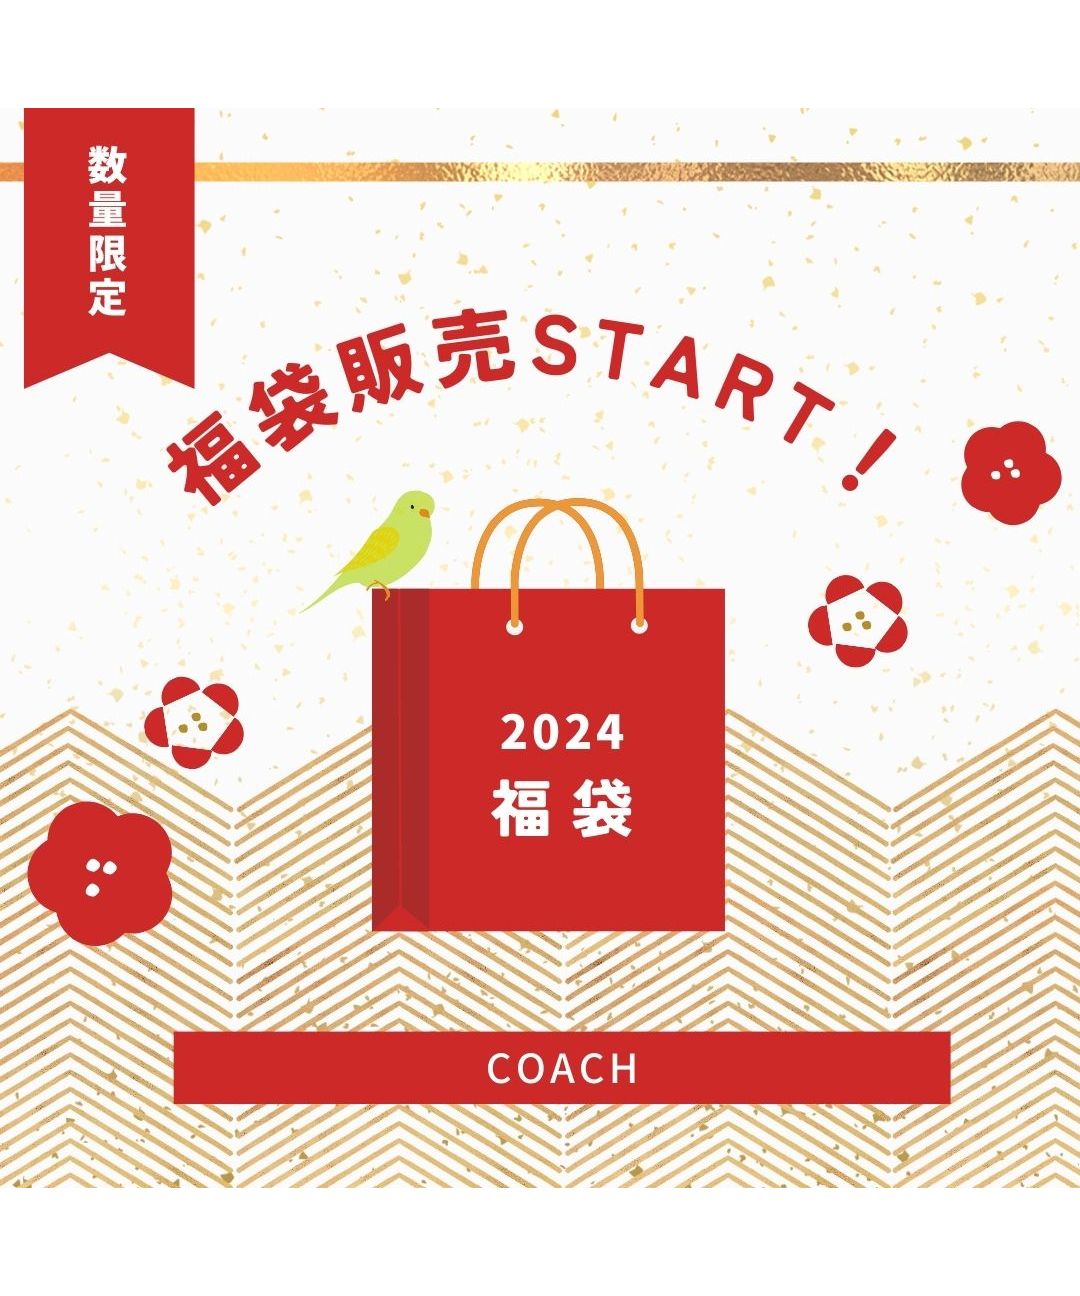 クーポン】【セール 60%OFF】【数量限定セット商品】福袋 Coach コーチ ...